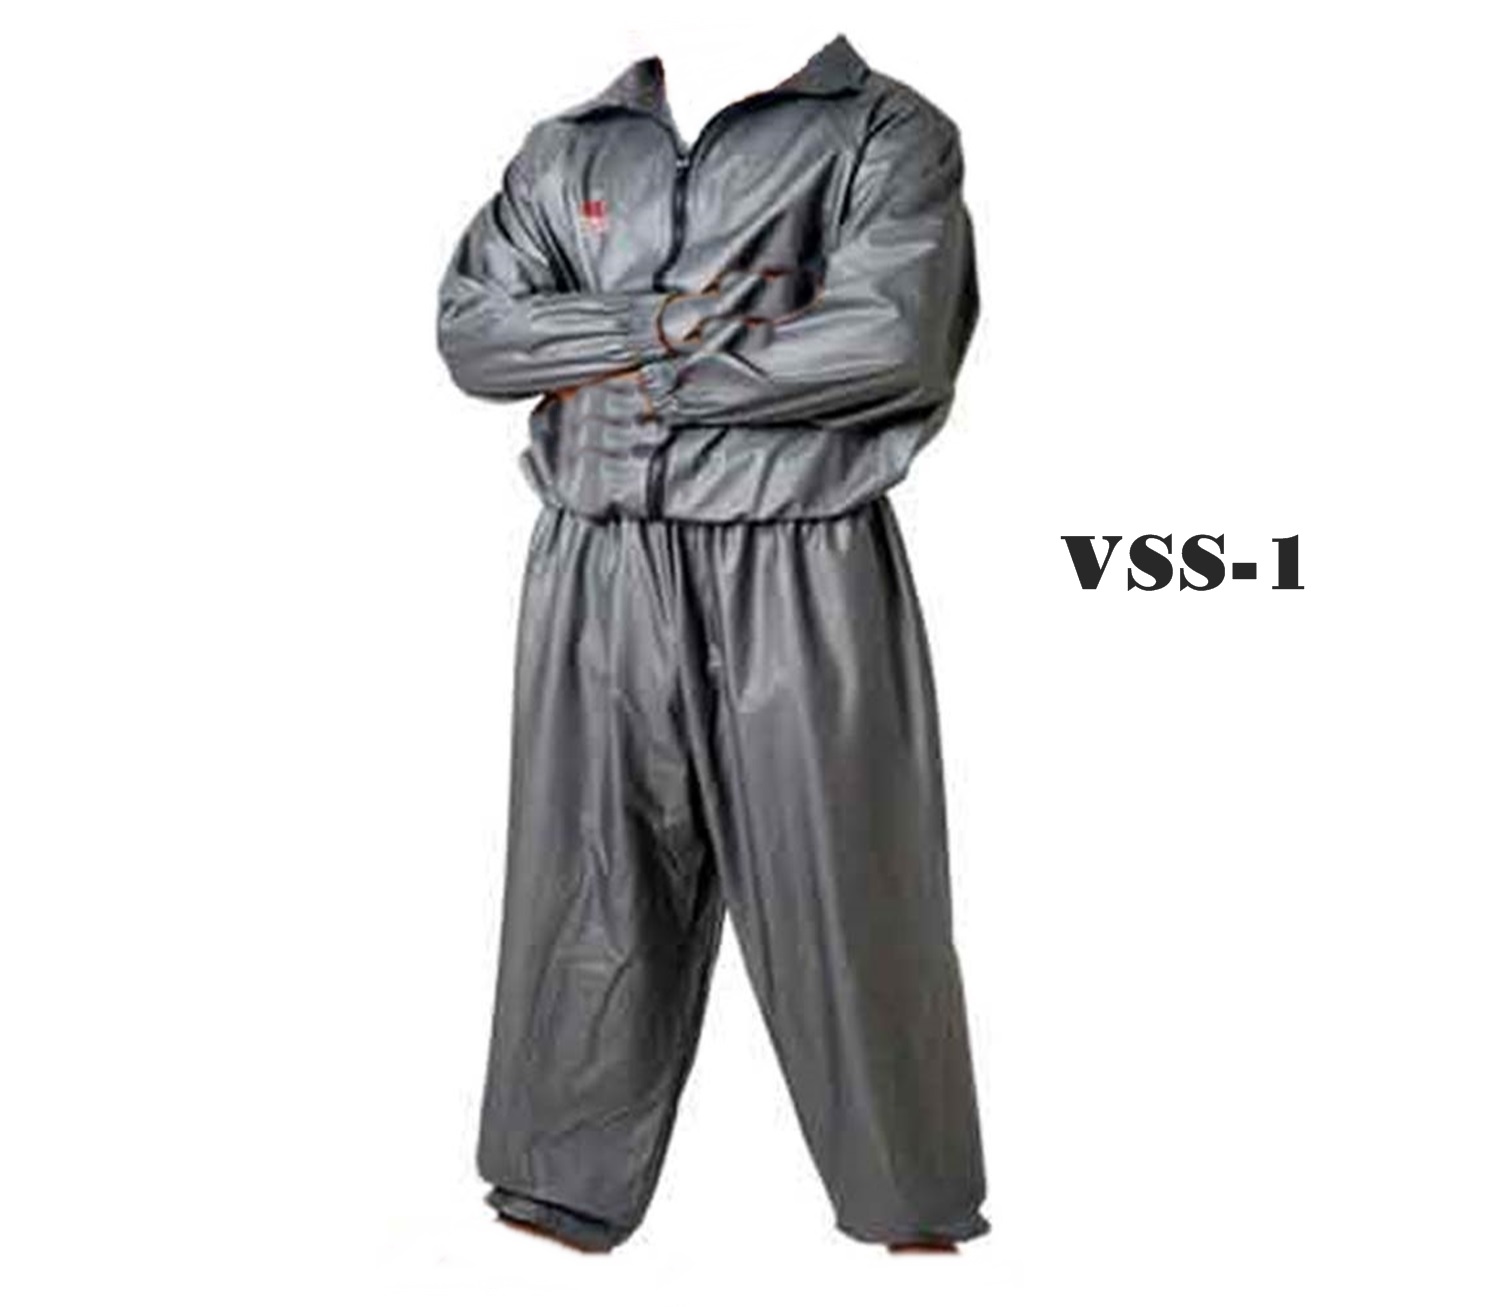 Twins Special Sauna Sweat Suit  VSS-1 Gray weight cuts before fights ( S,M,L,XL,XXL) Small size ชุดลดน้ำหนัก ทวินส์ สเปเชี่ยล ซาวน่า  สีเทา ทำจากไวนิล ของเเท้จากโรงงาน